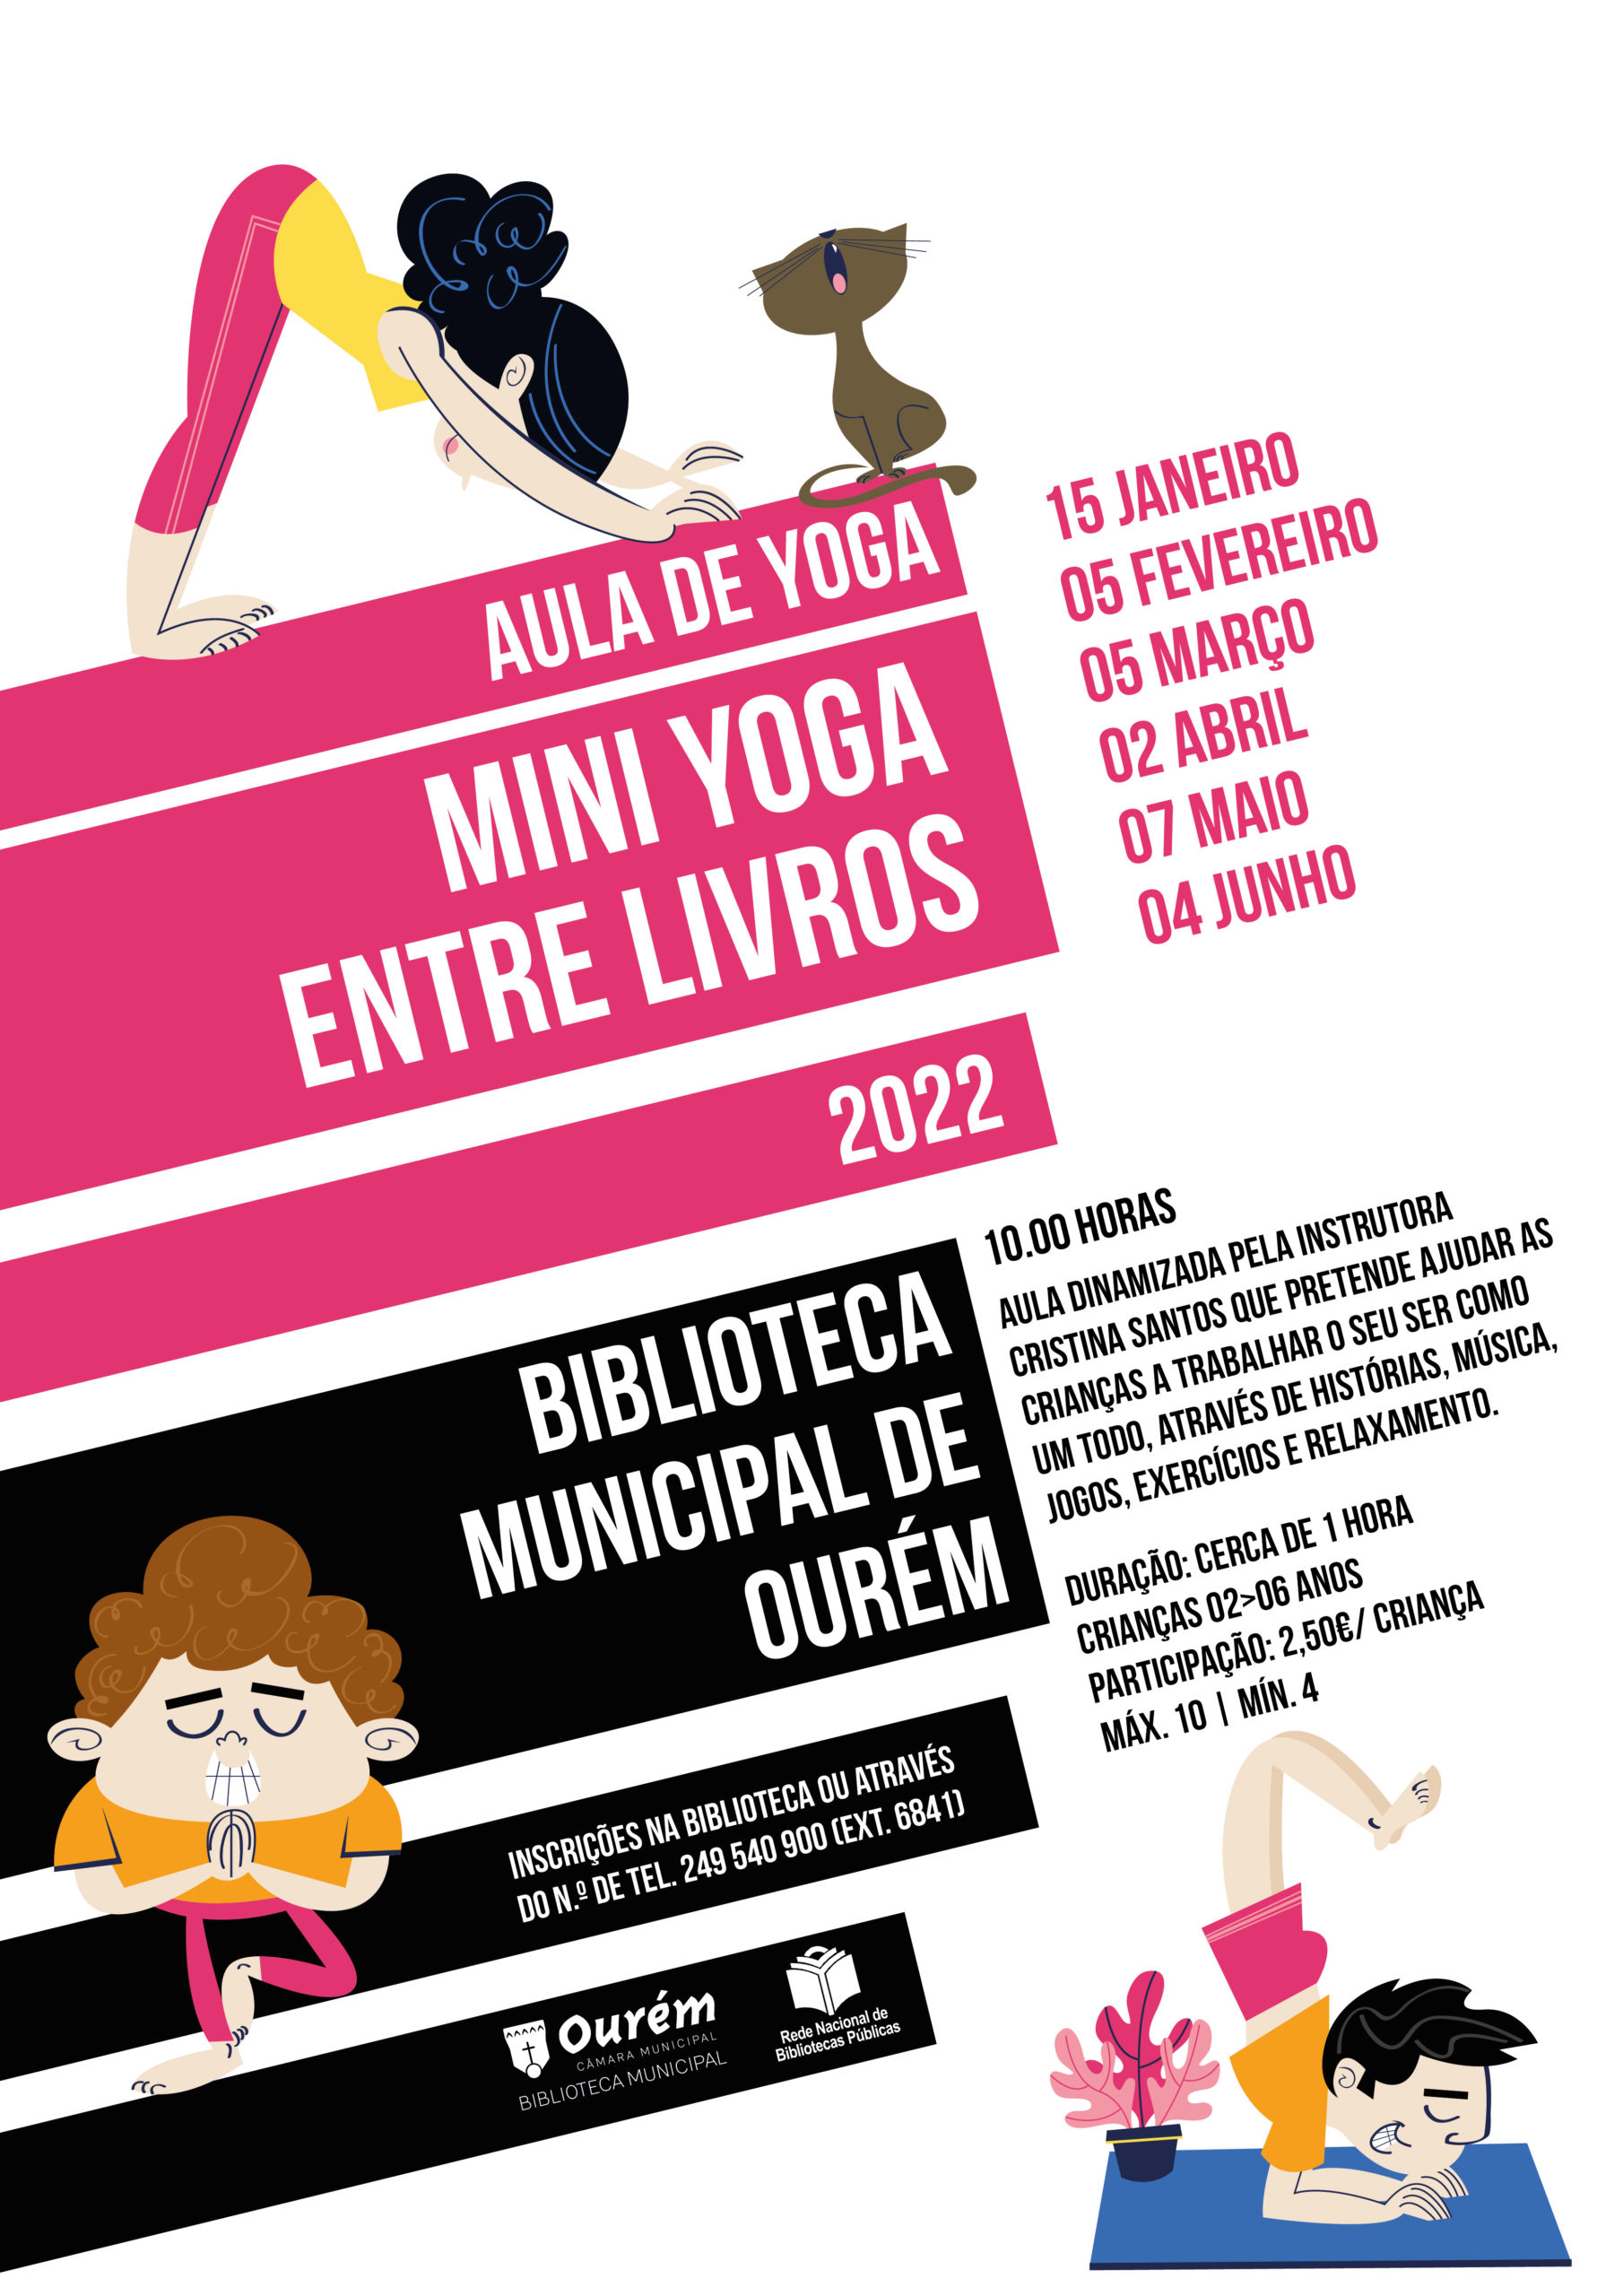 Mini Yoga Entre Livros – Janeiro 2022 - Município de Ourém